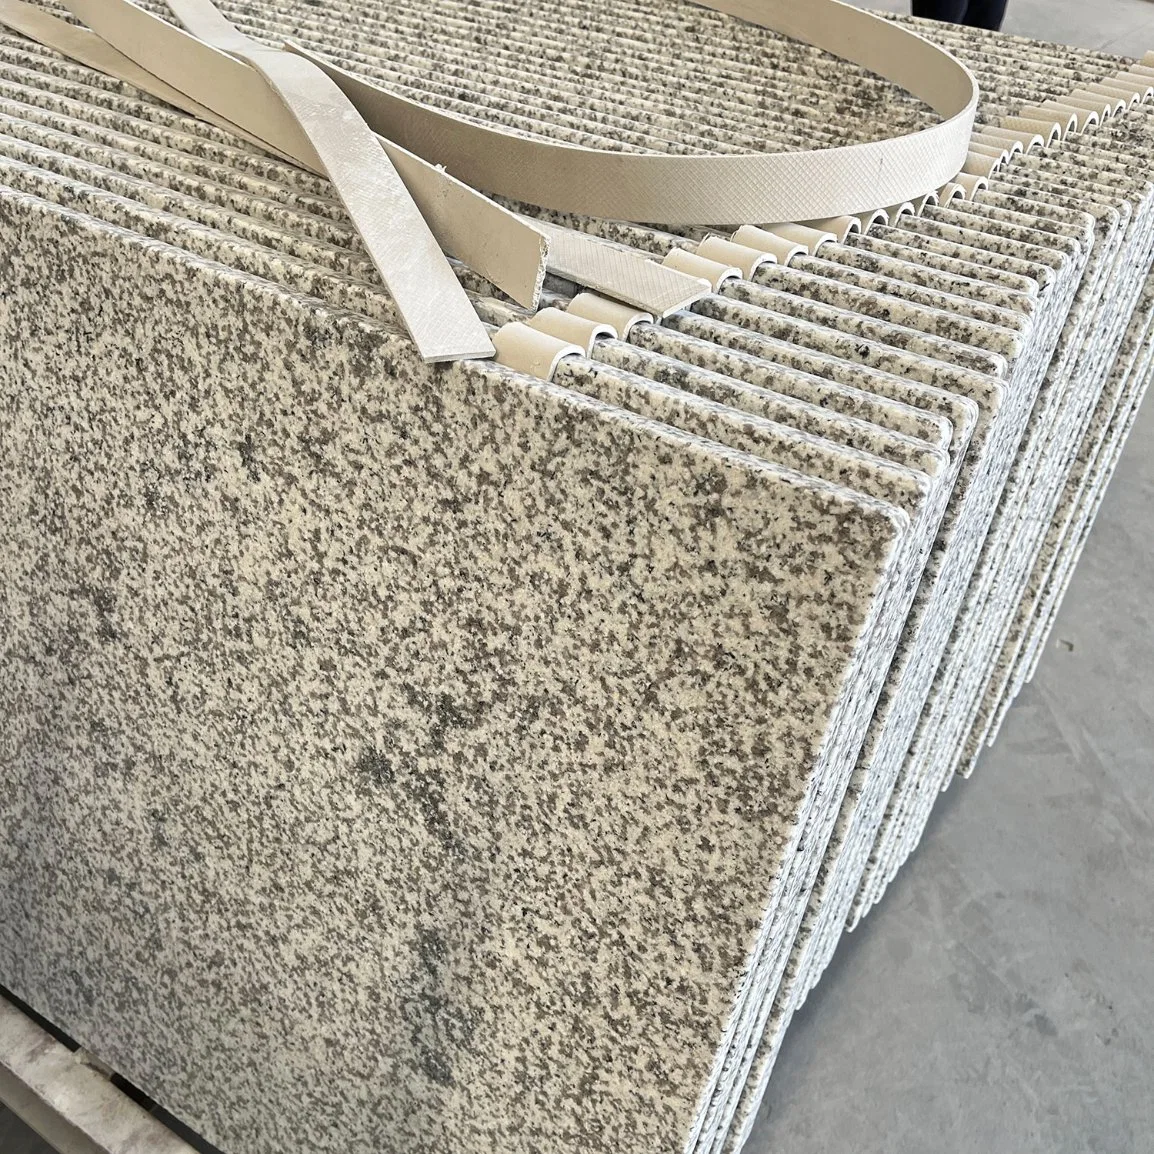 Fujian granito gris G655 de la cocina de granito pulido de Sobremesa superior para los materiales de construcción